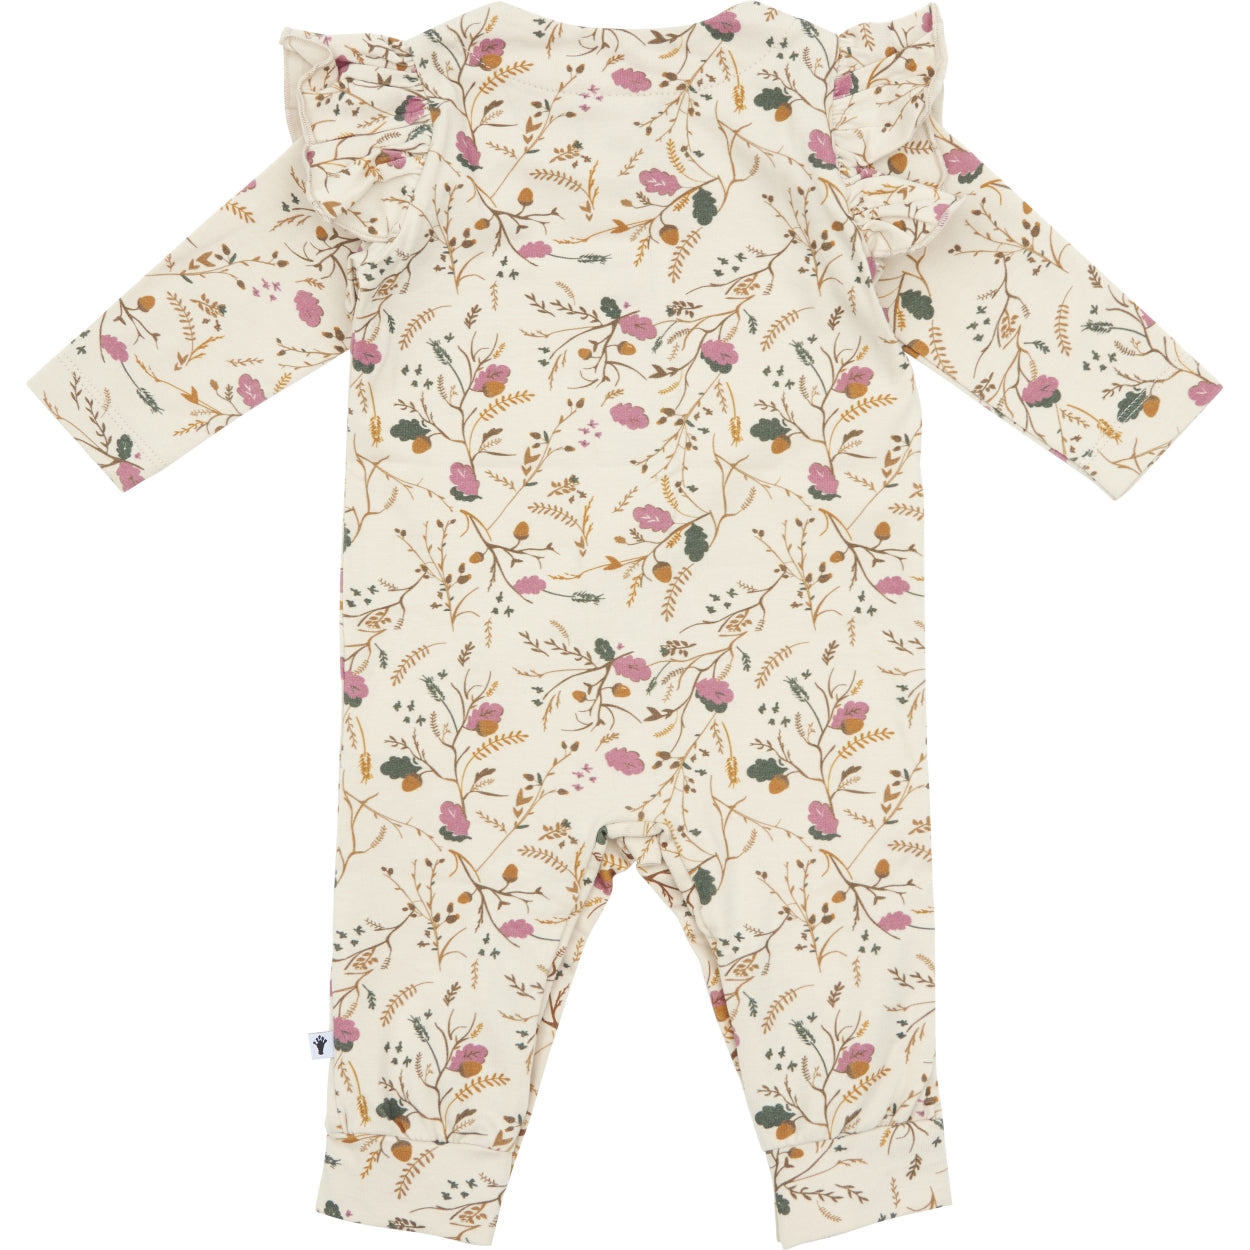 Meisjes Jumpsuit buttons van Klein Baby in de kleur AOP Flower/Acorn in maat 68.